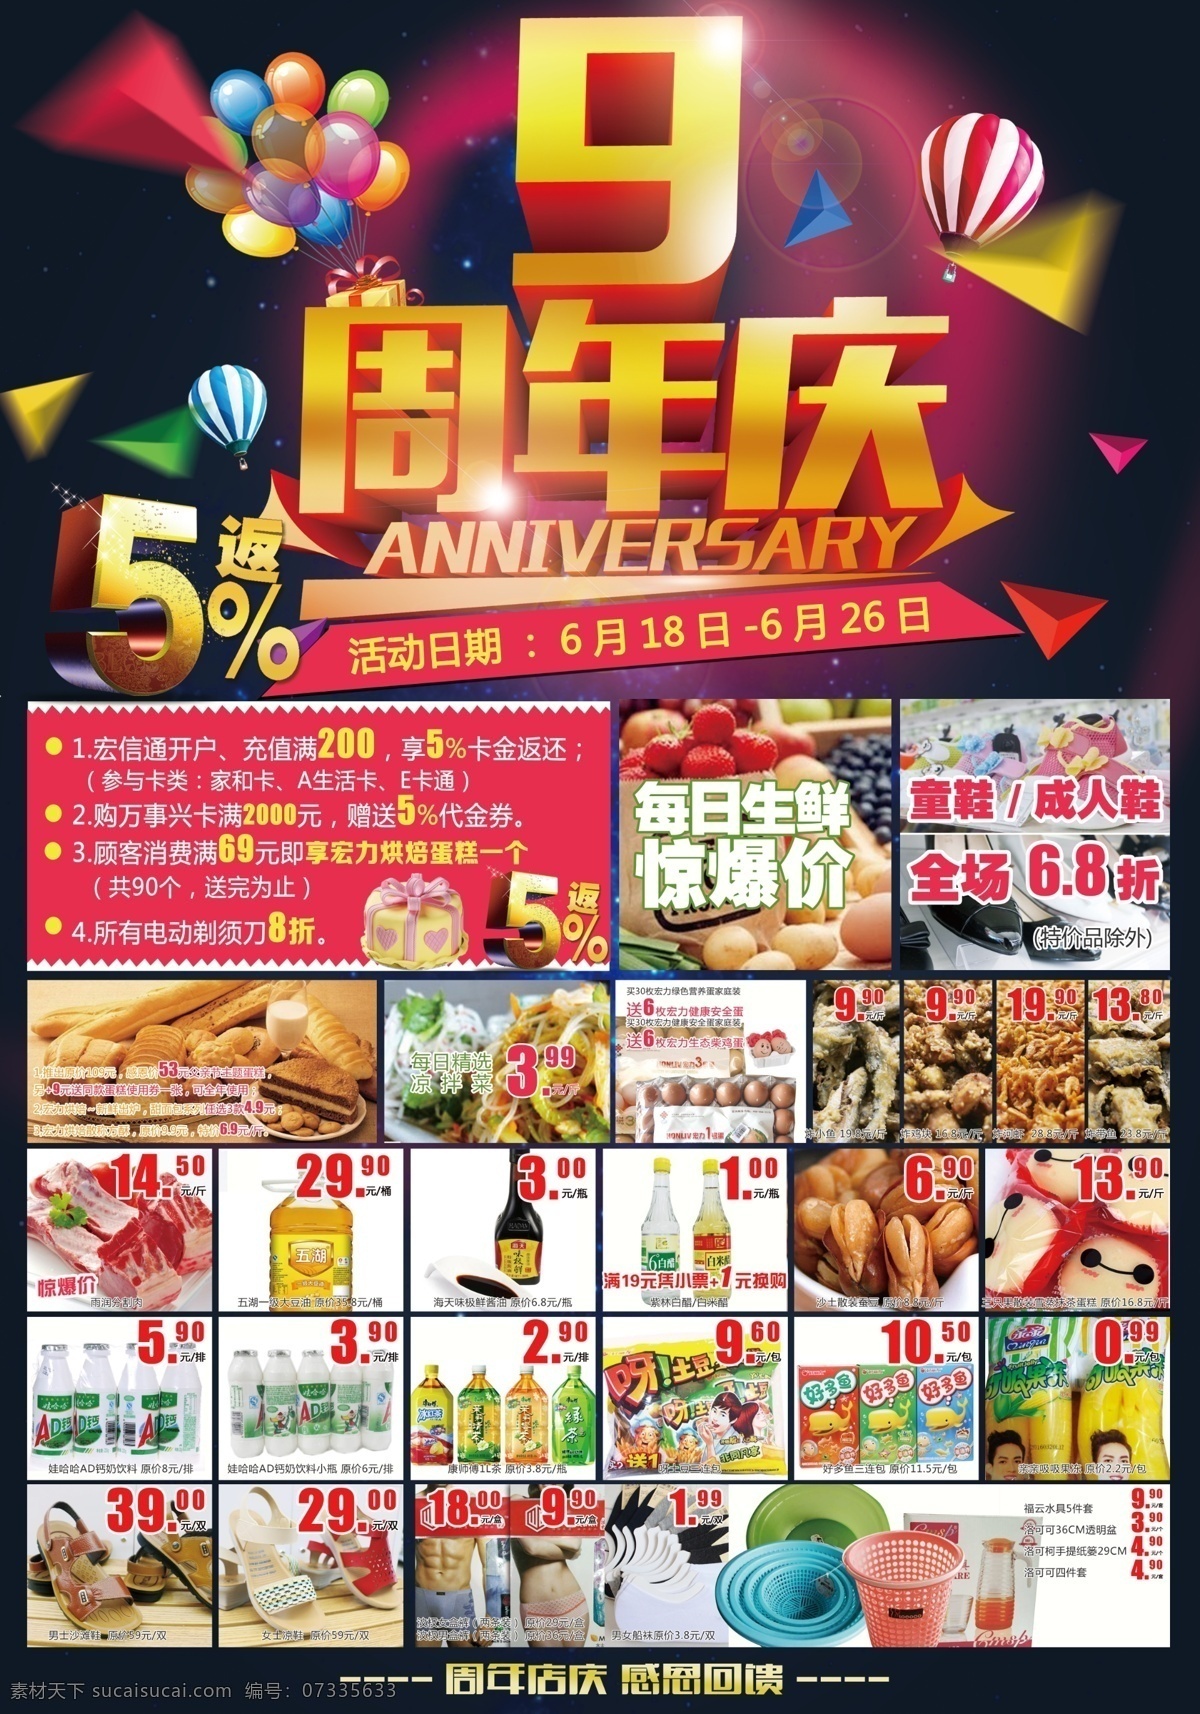 9周年庆 周年店庆 超市彩页 活动 黑色